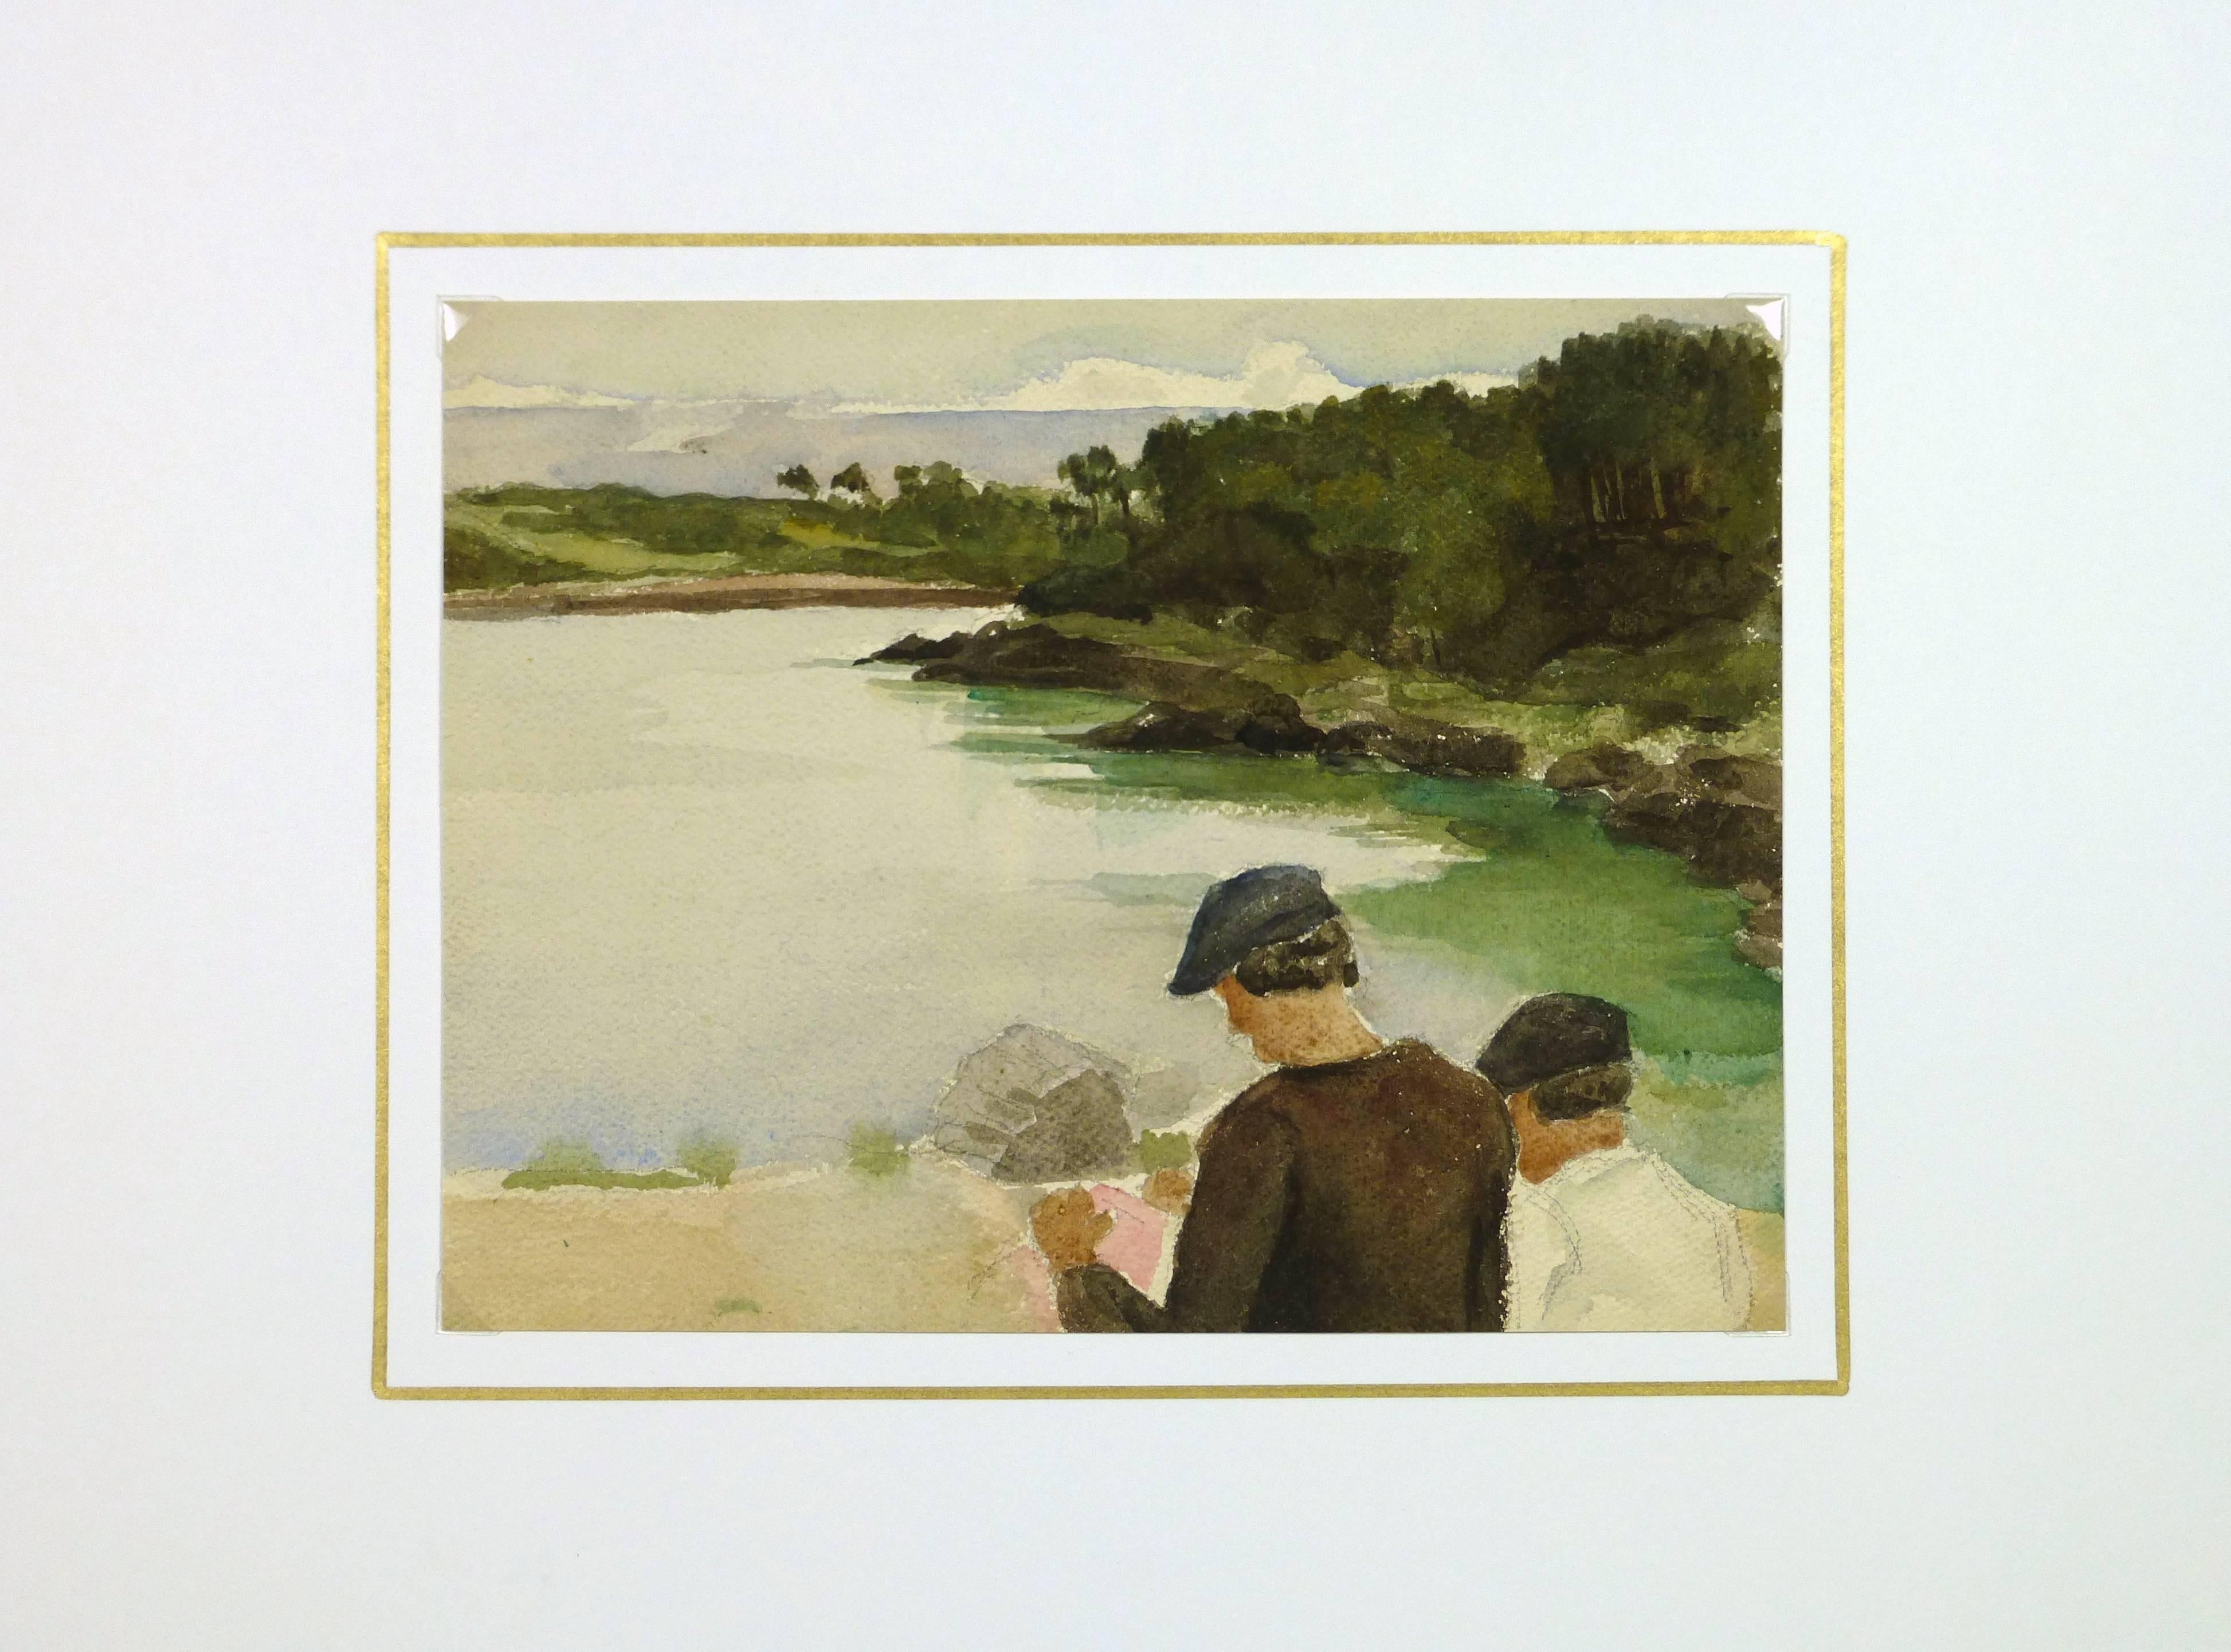 Englisches Aquarell von zwei Männern an einem See, um 1930.

Originalkunstwerk auf Papier auf einem weißen Passepartout mit Goldrand. Die Matte passt in einen Rahmen mit Standardgröße. Inklusive Plastikhülle und Echtheitszertifikat für die